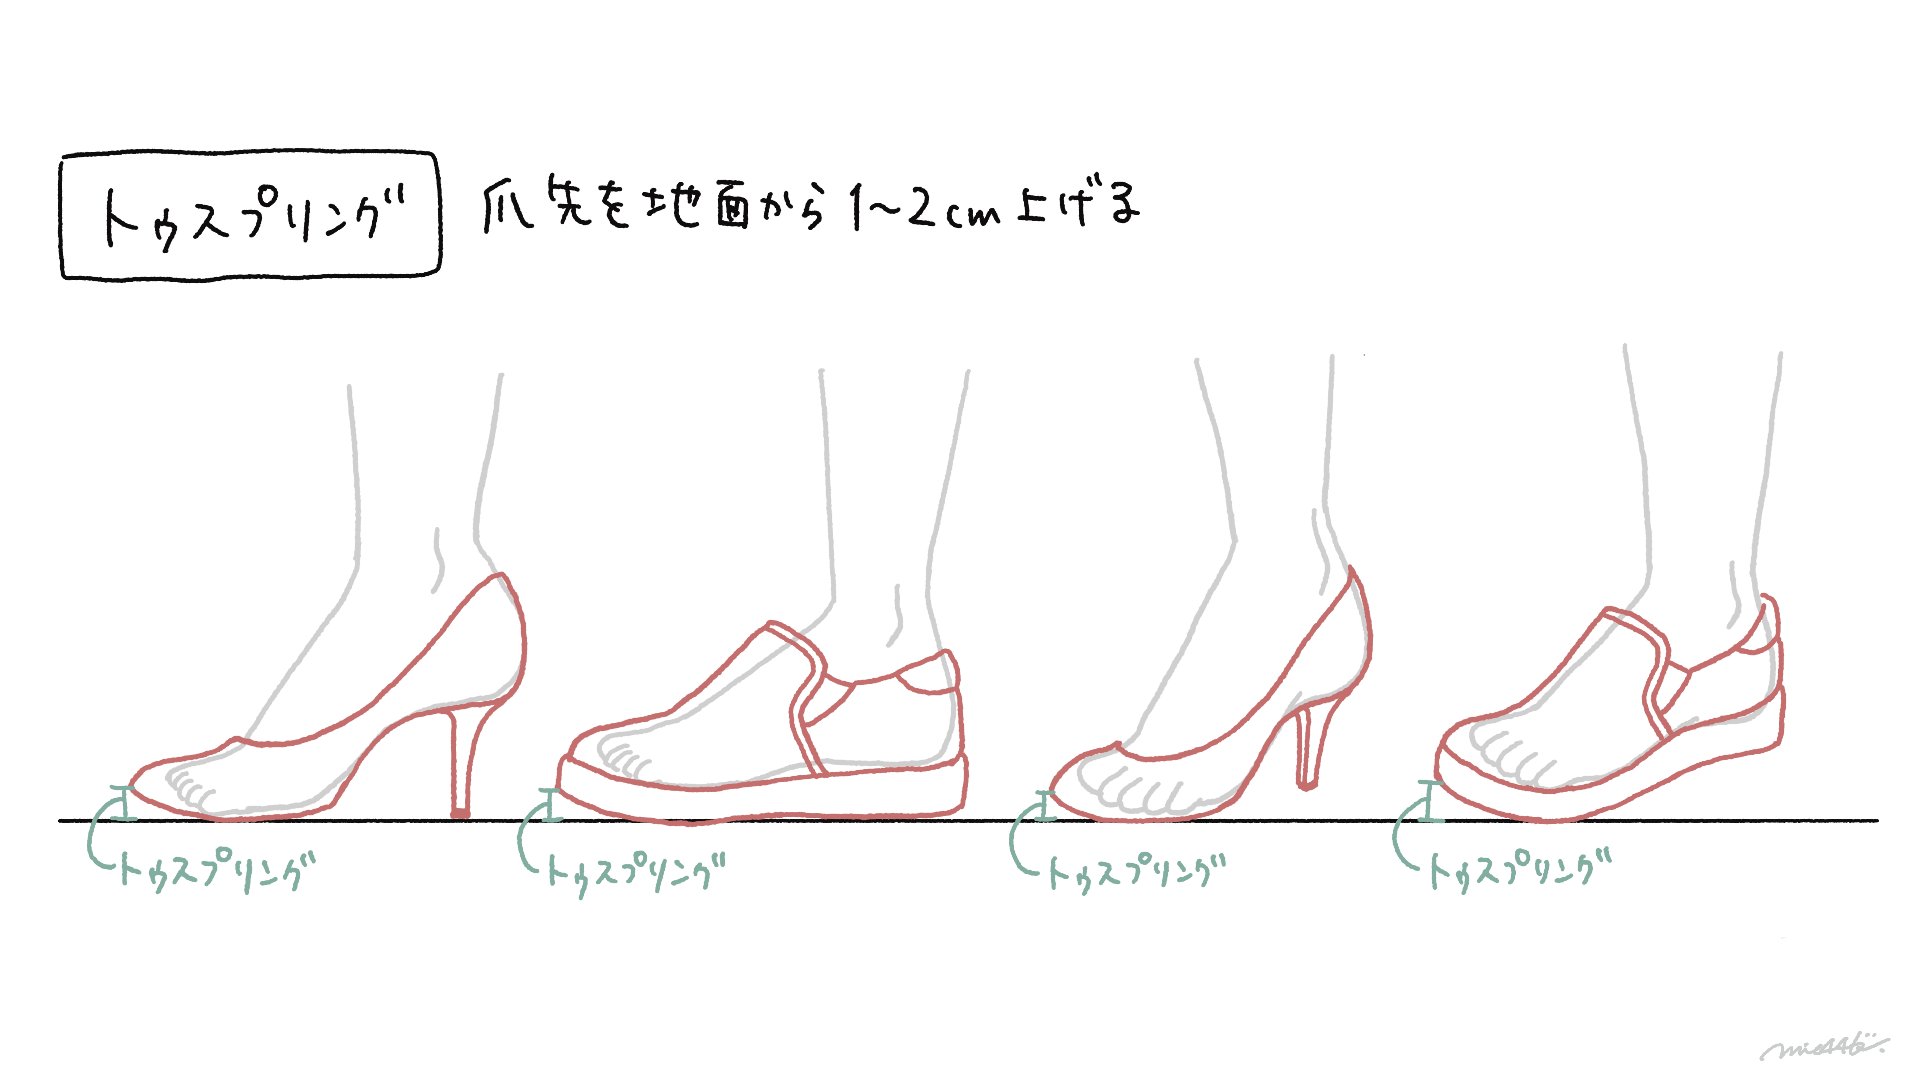 Twitter এ みえ 靴の描き方本4 13発売 Harukichi Ill わー嬉しいです ありがとうございます ヒールについてももっと細かく解説する予定なのでnote完成したらぜひ読んでみてください ট ইট র